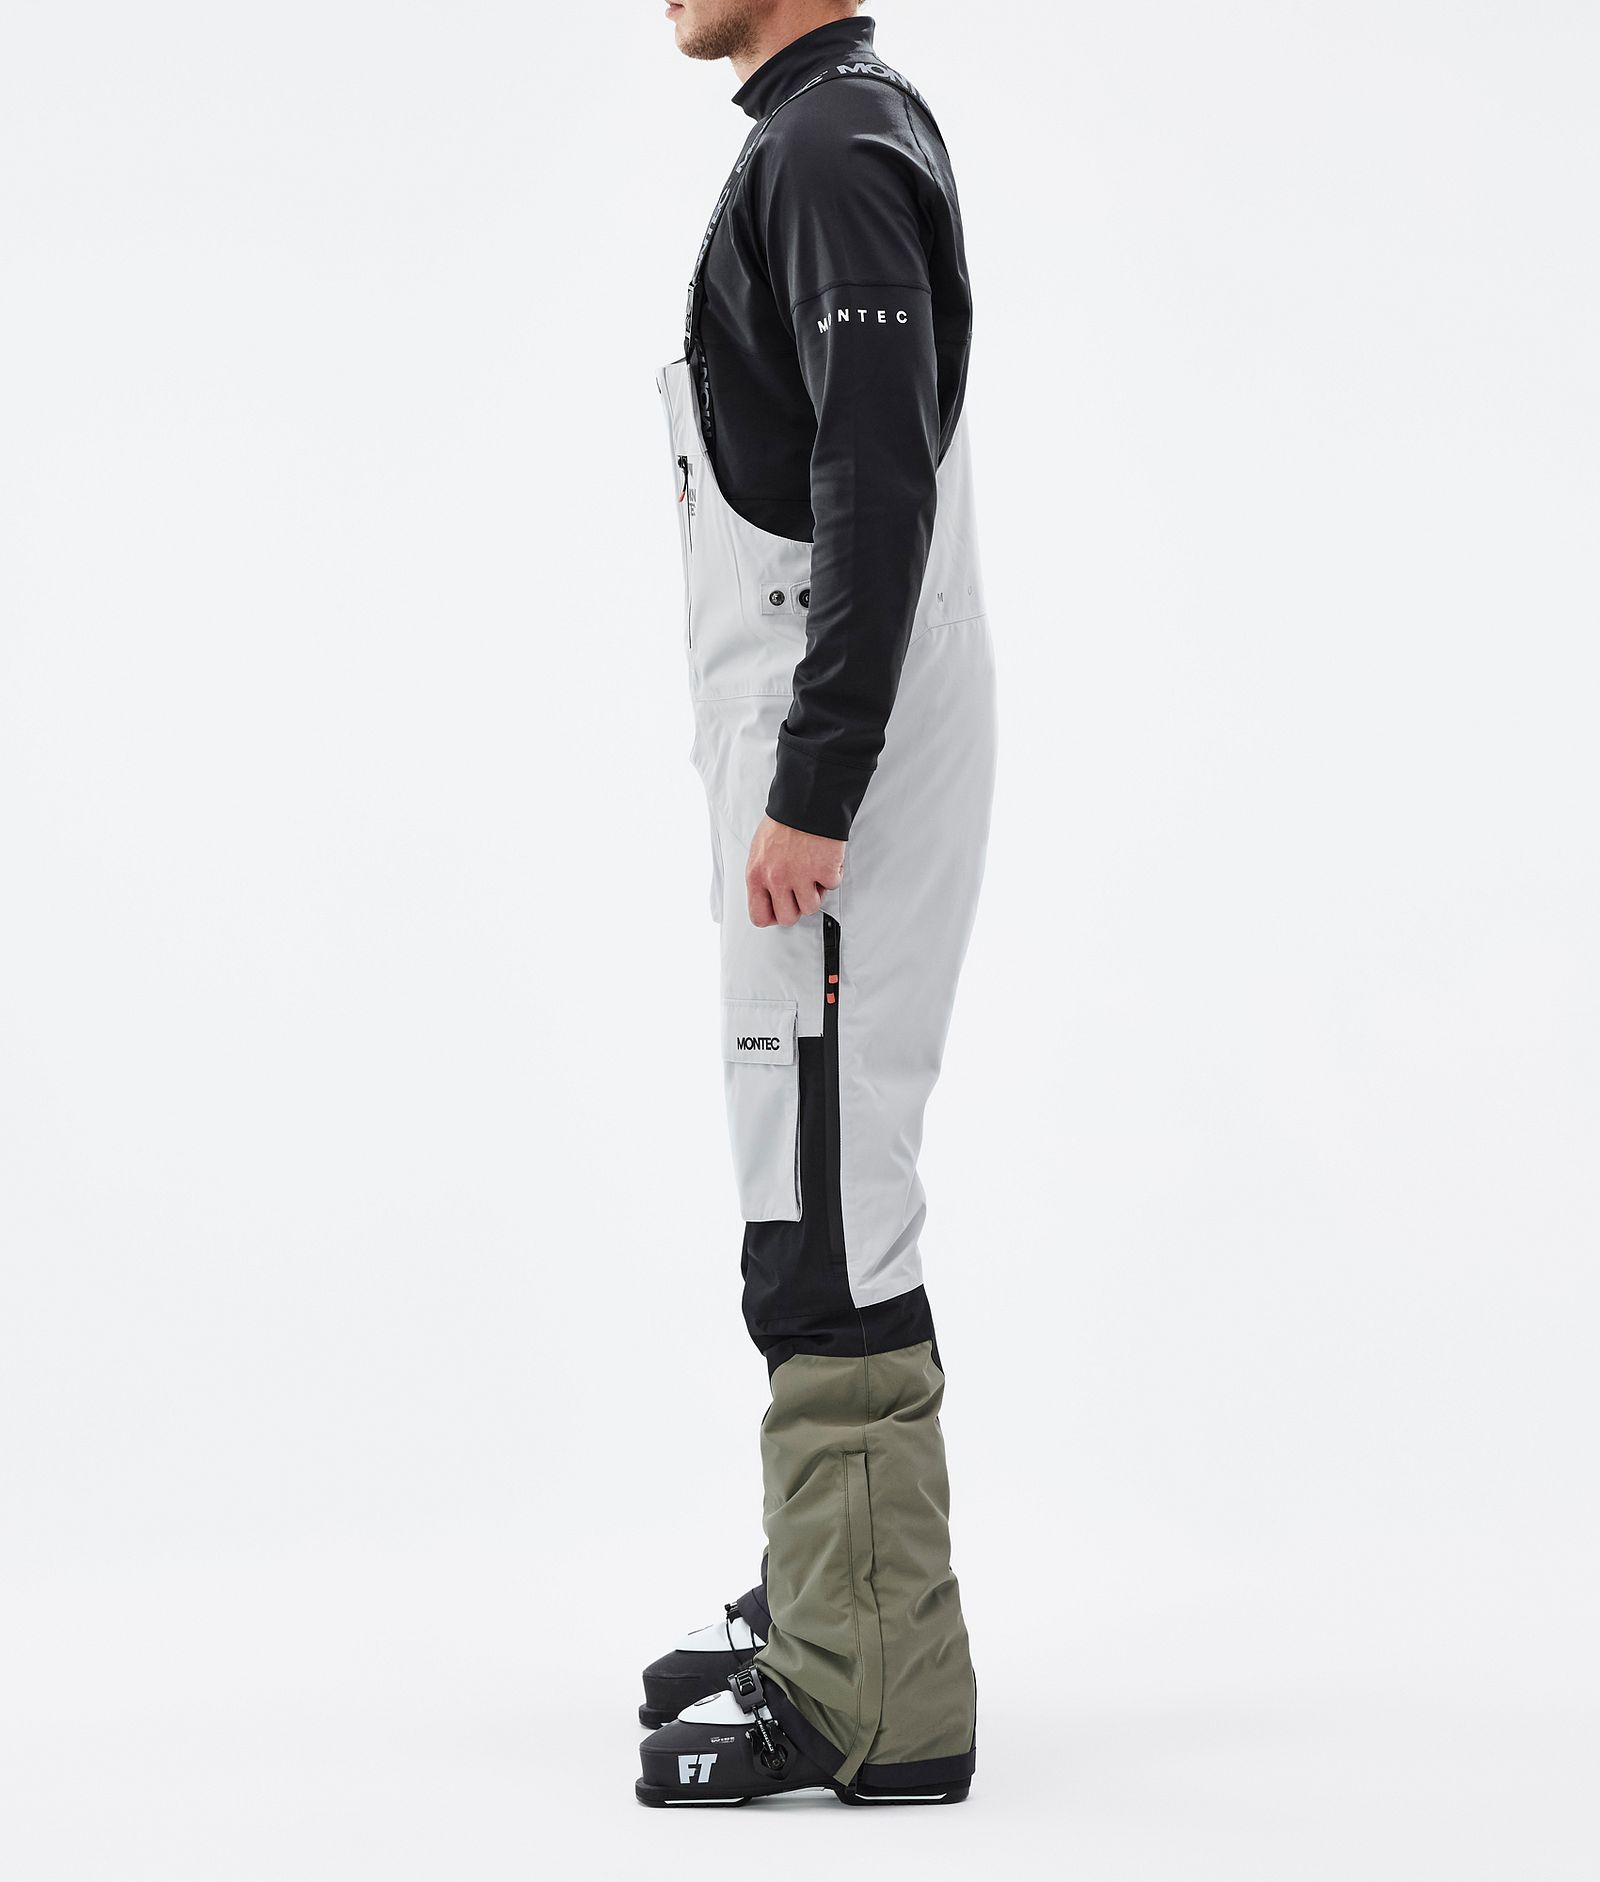 Montec Fawk Spodnie Narciarskie Mężczyźni Light Grey/Black/Greenish, Zdjęcie 2 z 6